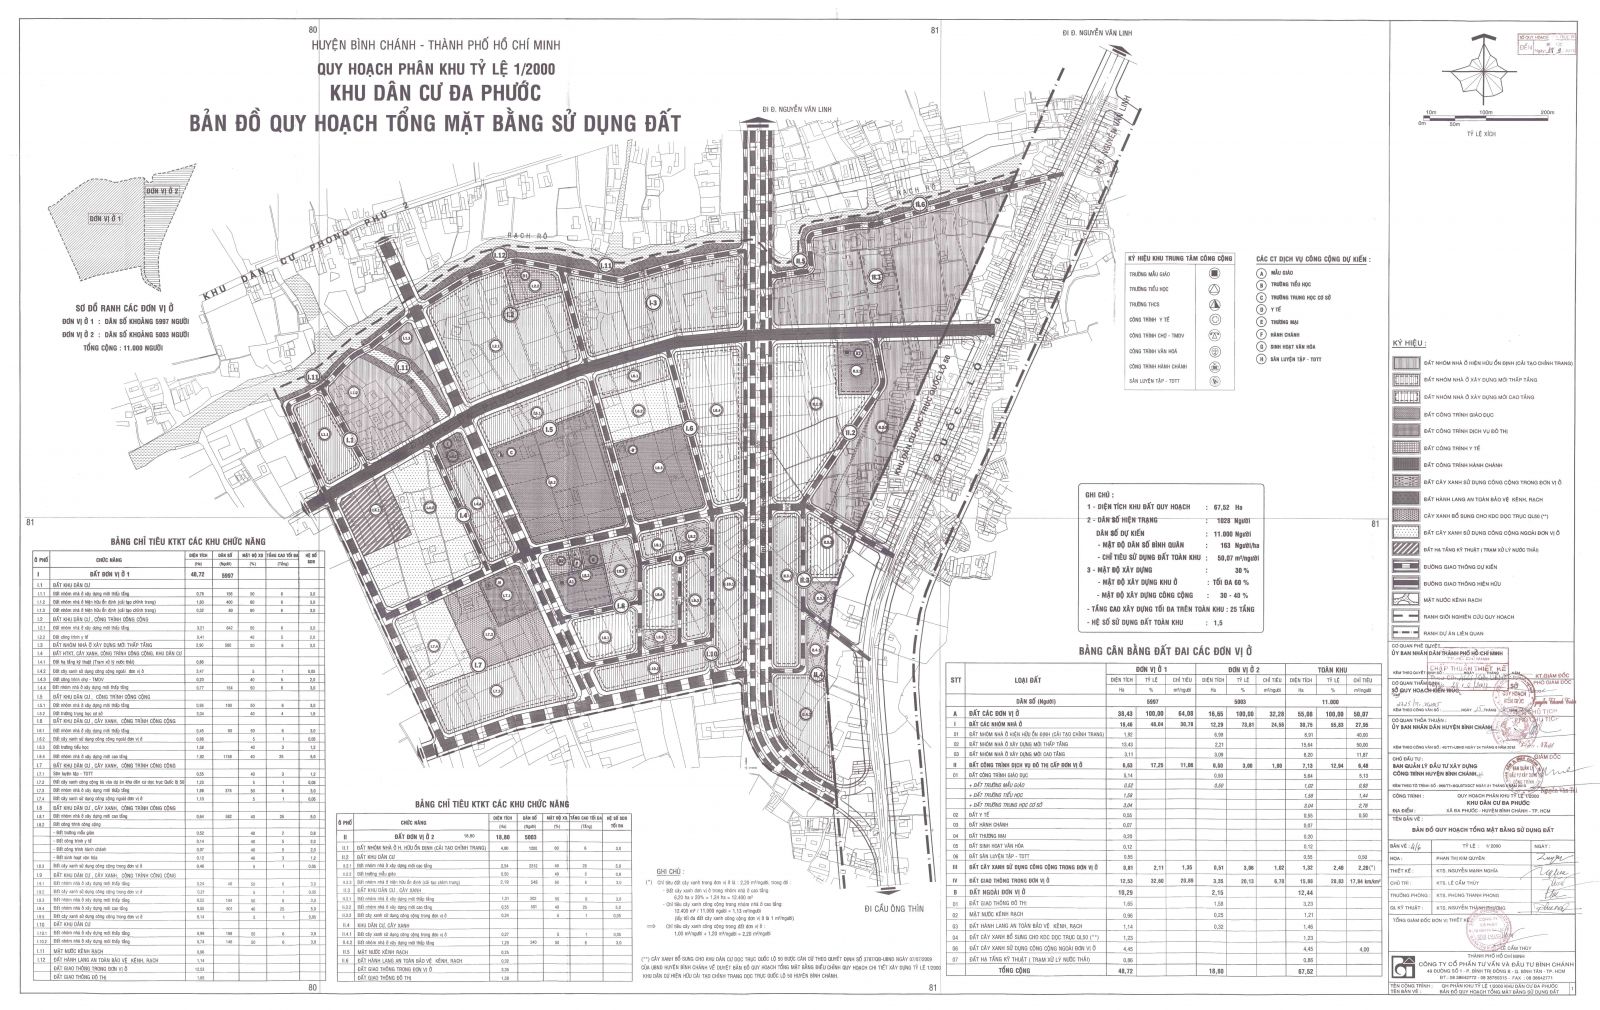 Bản đồ quy hoạch 1/2000 Khu dân cư Đa Phước, Huyện Bình Chánh